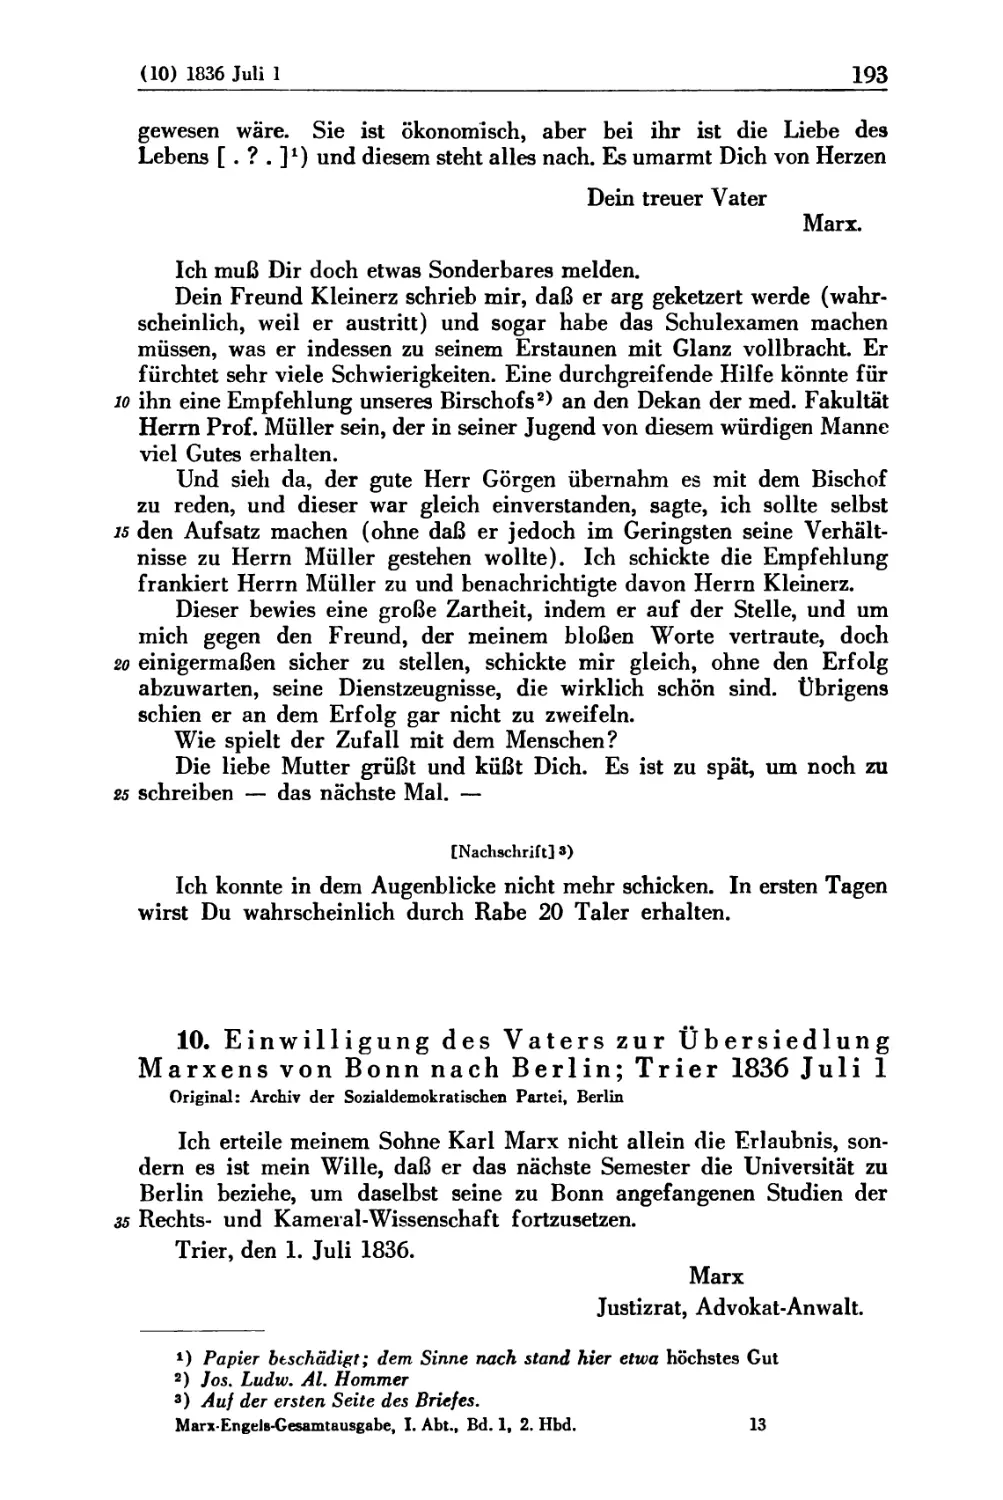 10. Einwilligung des Vaters zur Übersiedlung Marxens von Bonn nach Berlin; Trier 1836 Juli 1